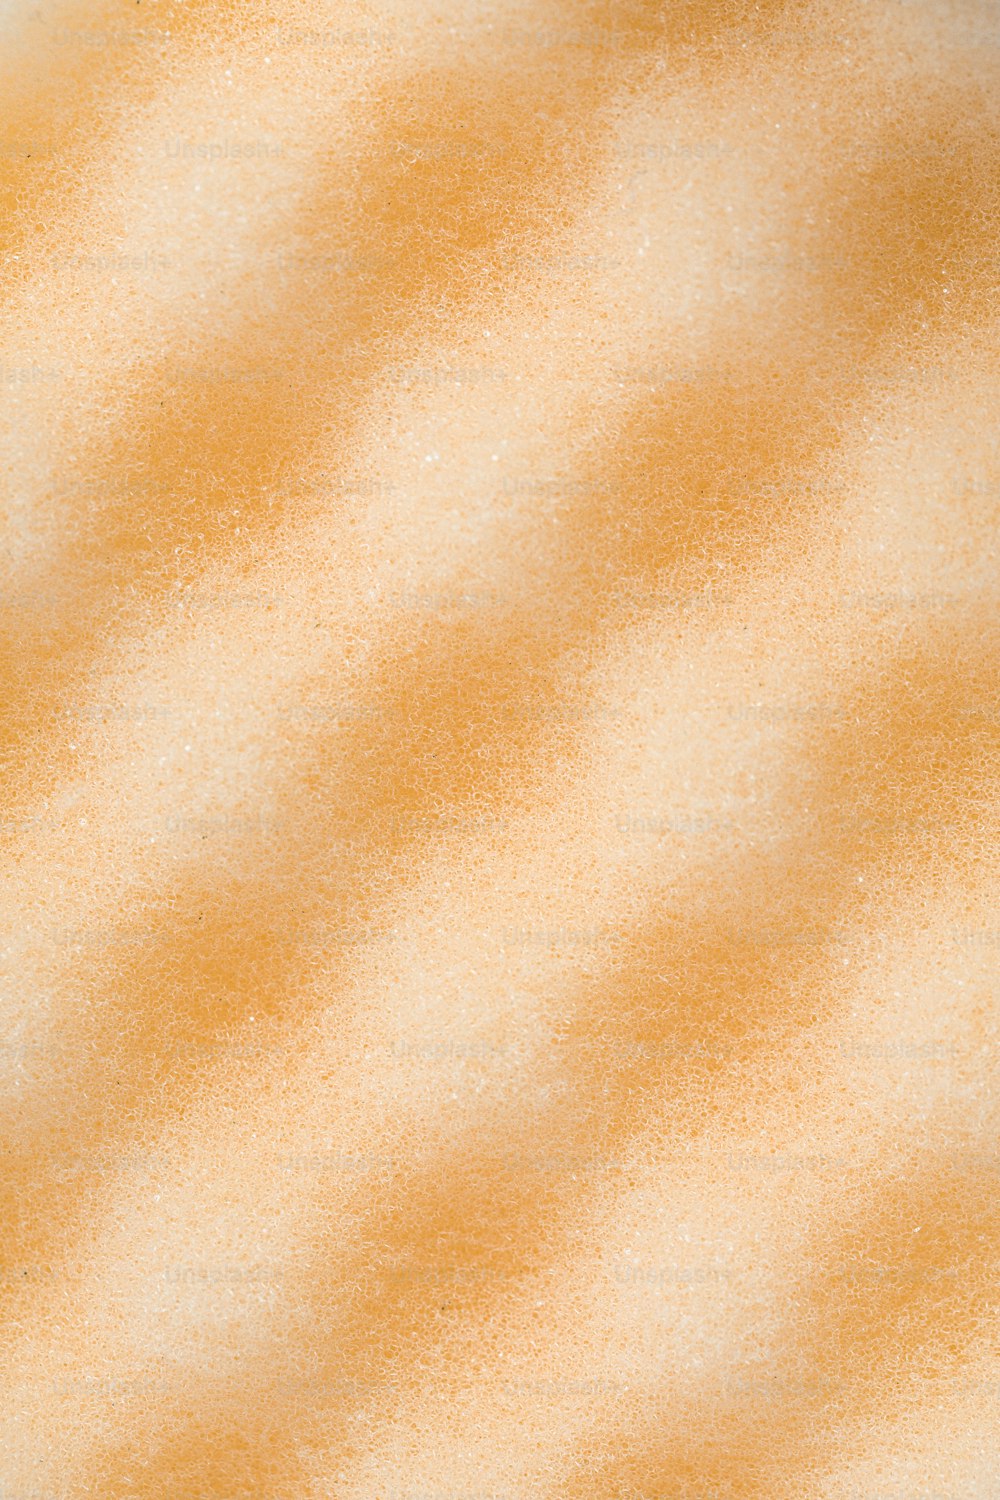 オレンジと白の背景の接写